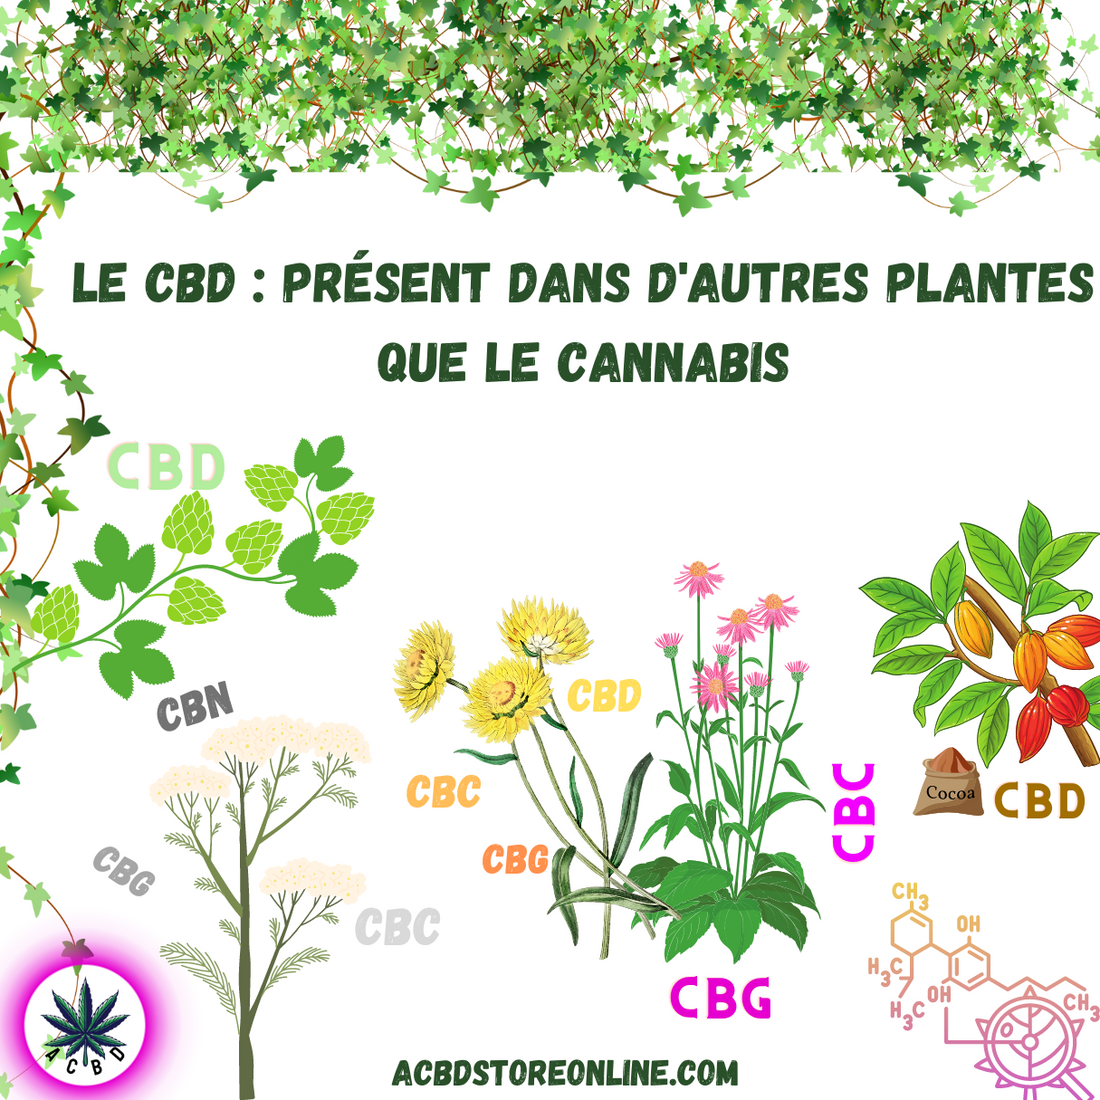 Le CBD : présent dans d'autres plantes que le cannabis